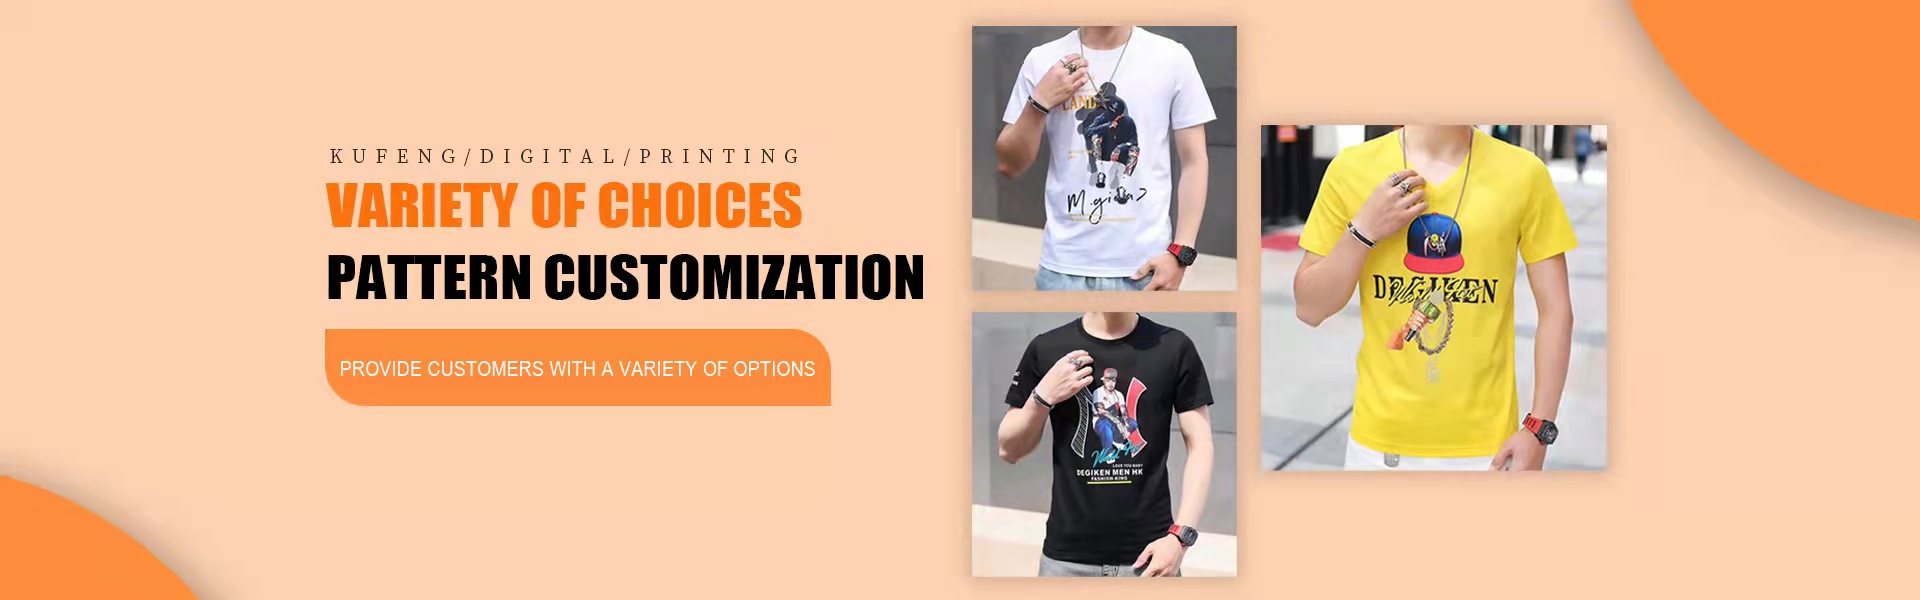 προσαρμογή προσωπικότητας, επεξεργασία εισερχόμενων δειγμάτων, ψηφιακή εκτύπωση,Kufeng digital clothing